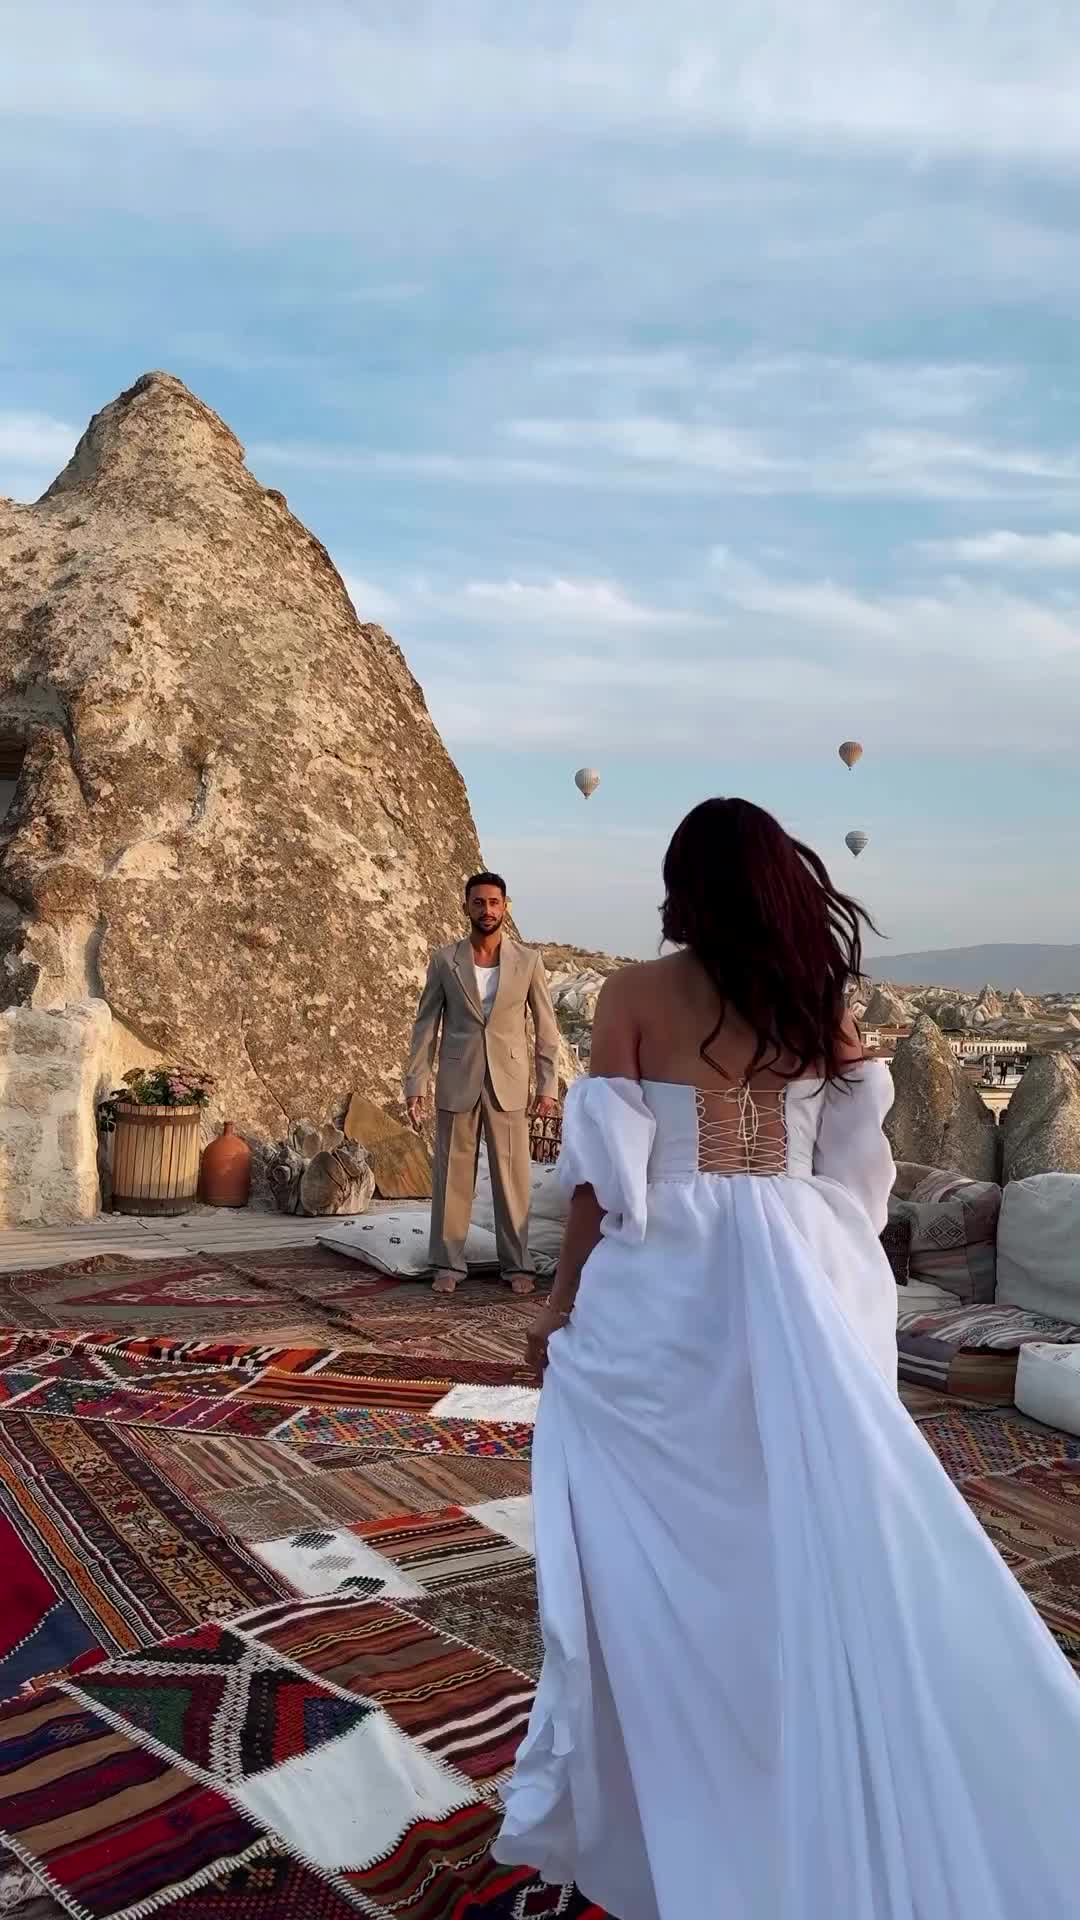 4 Days in Cappadocia - Epic Balloon Adventures